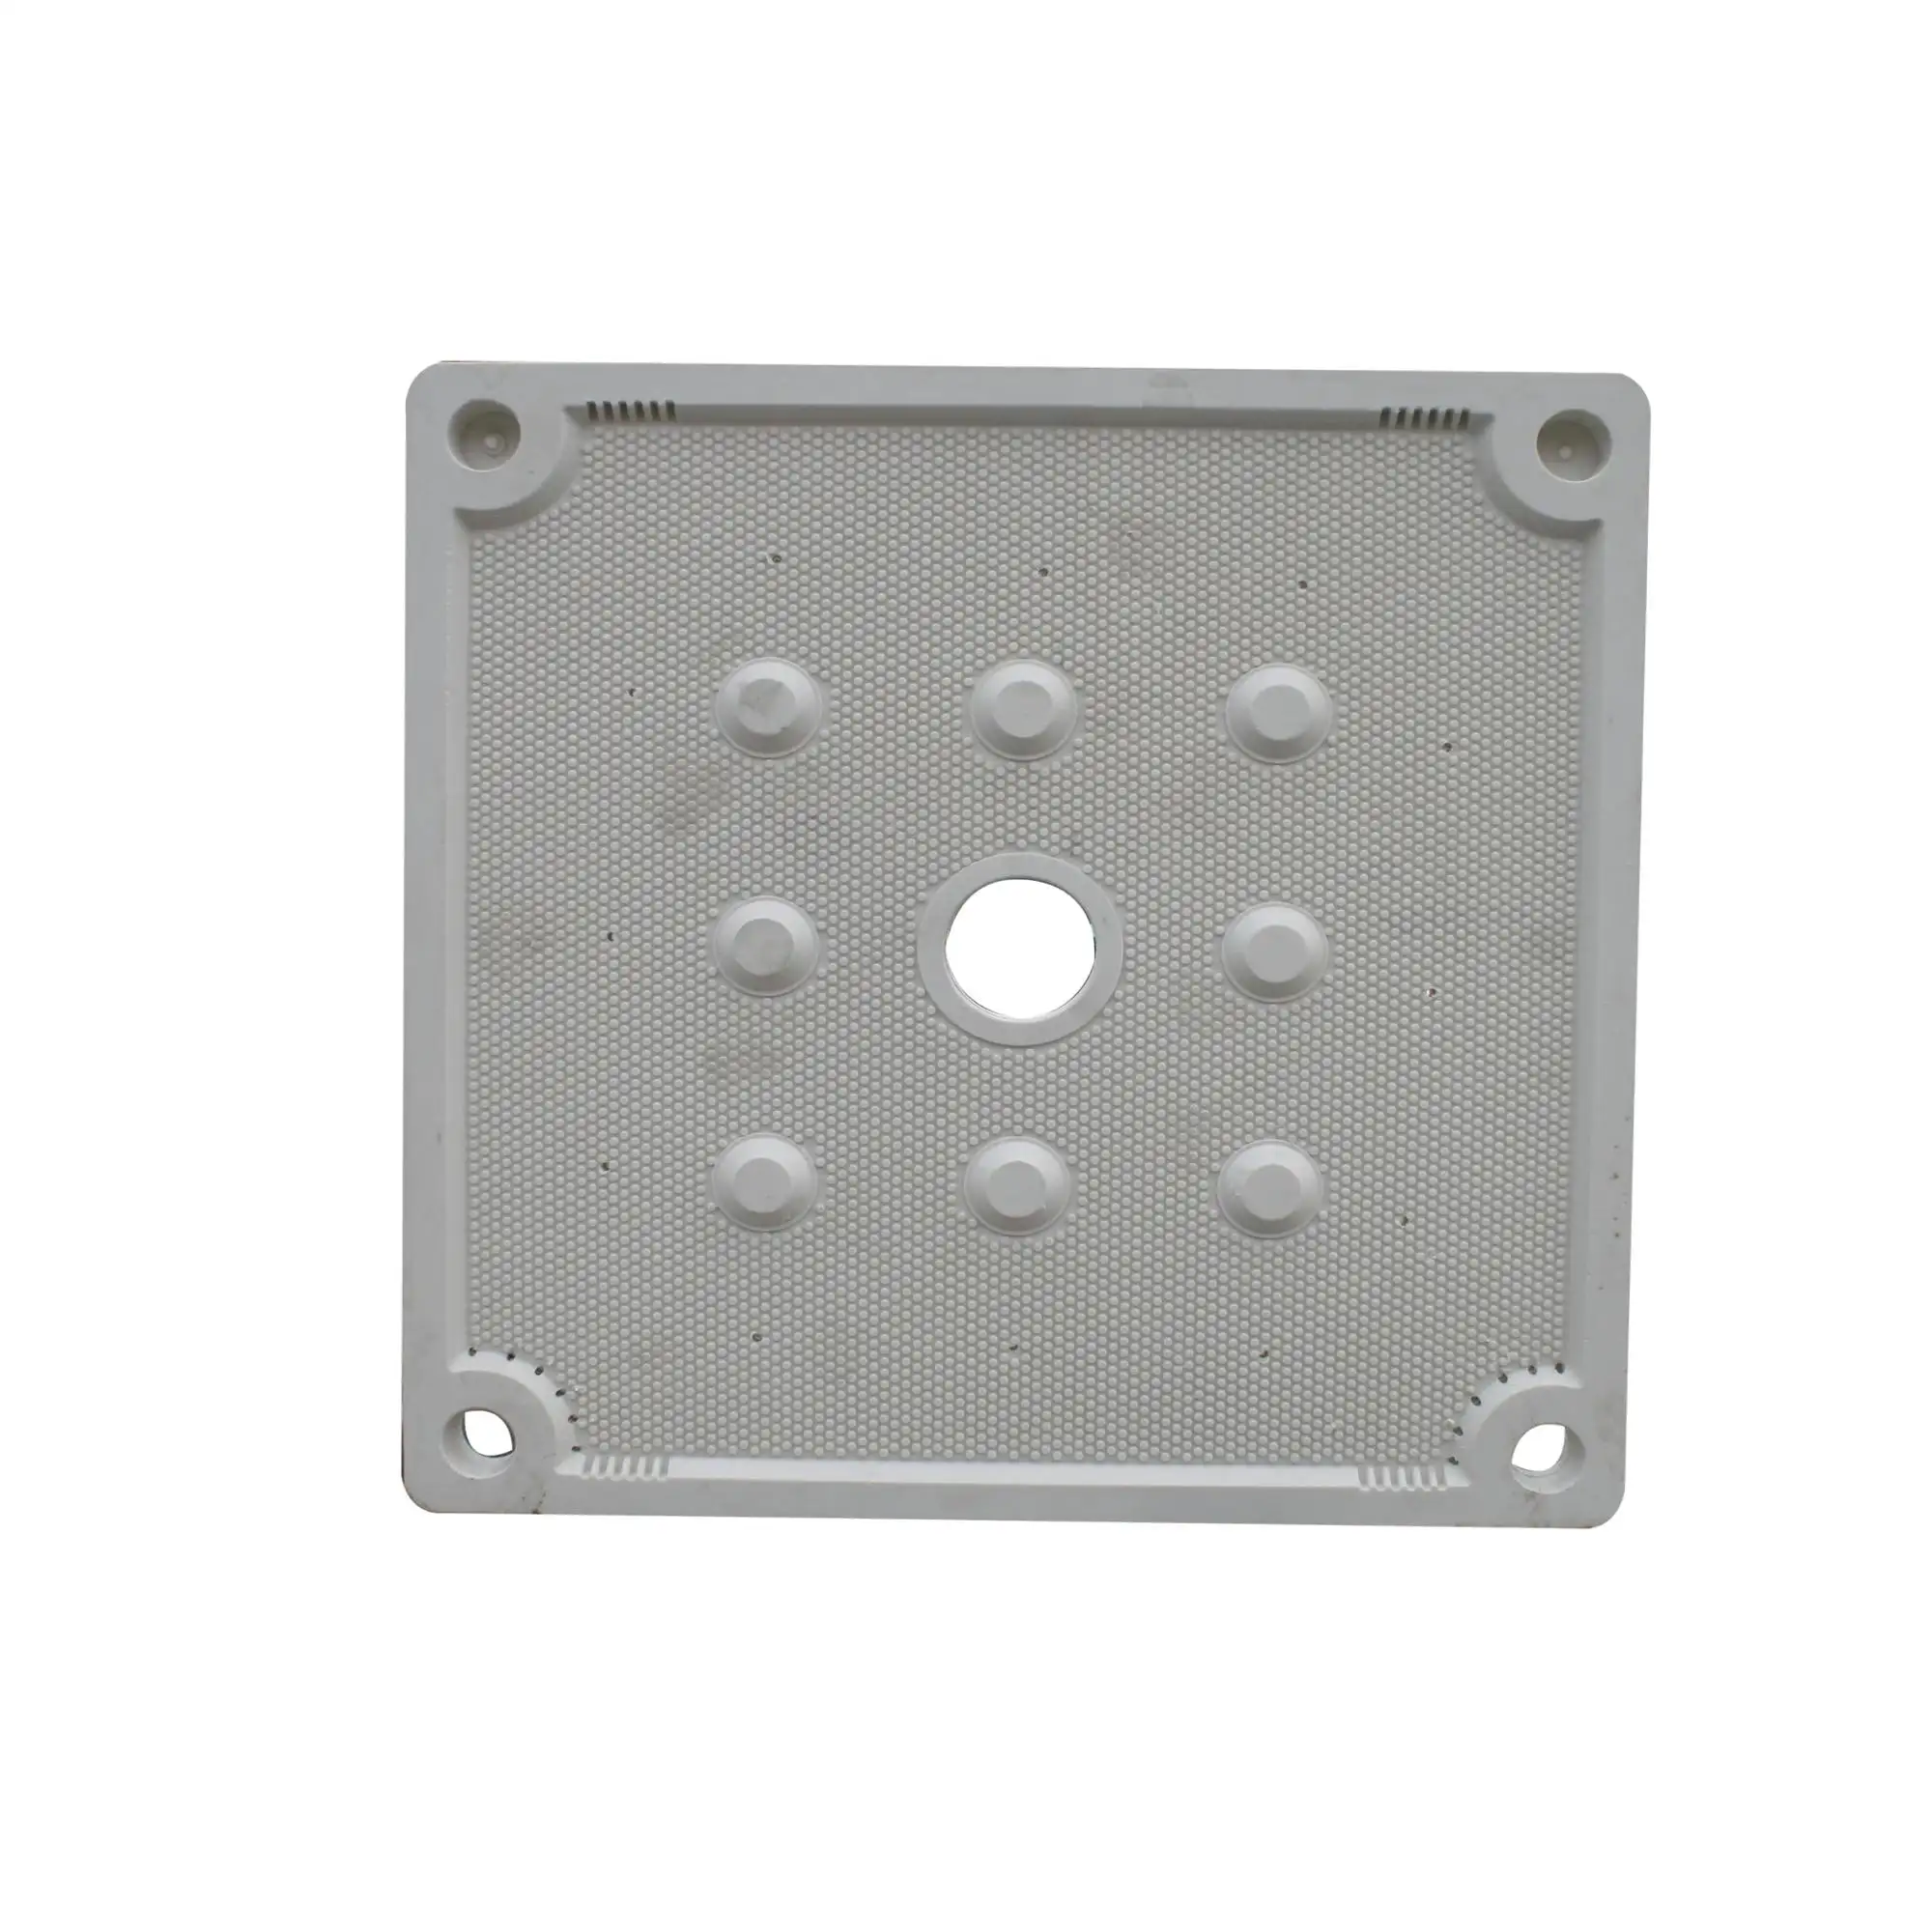 PP-Membran filter platte/Kammer filter press platte/-platte und Rahmen filter platte